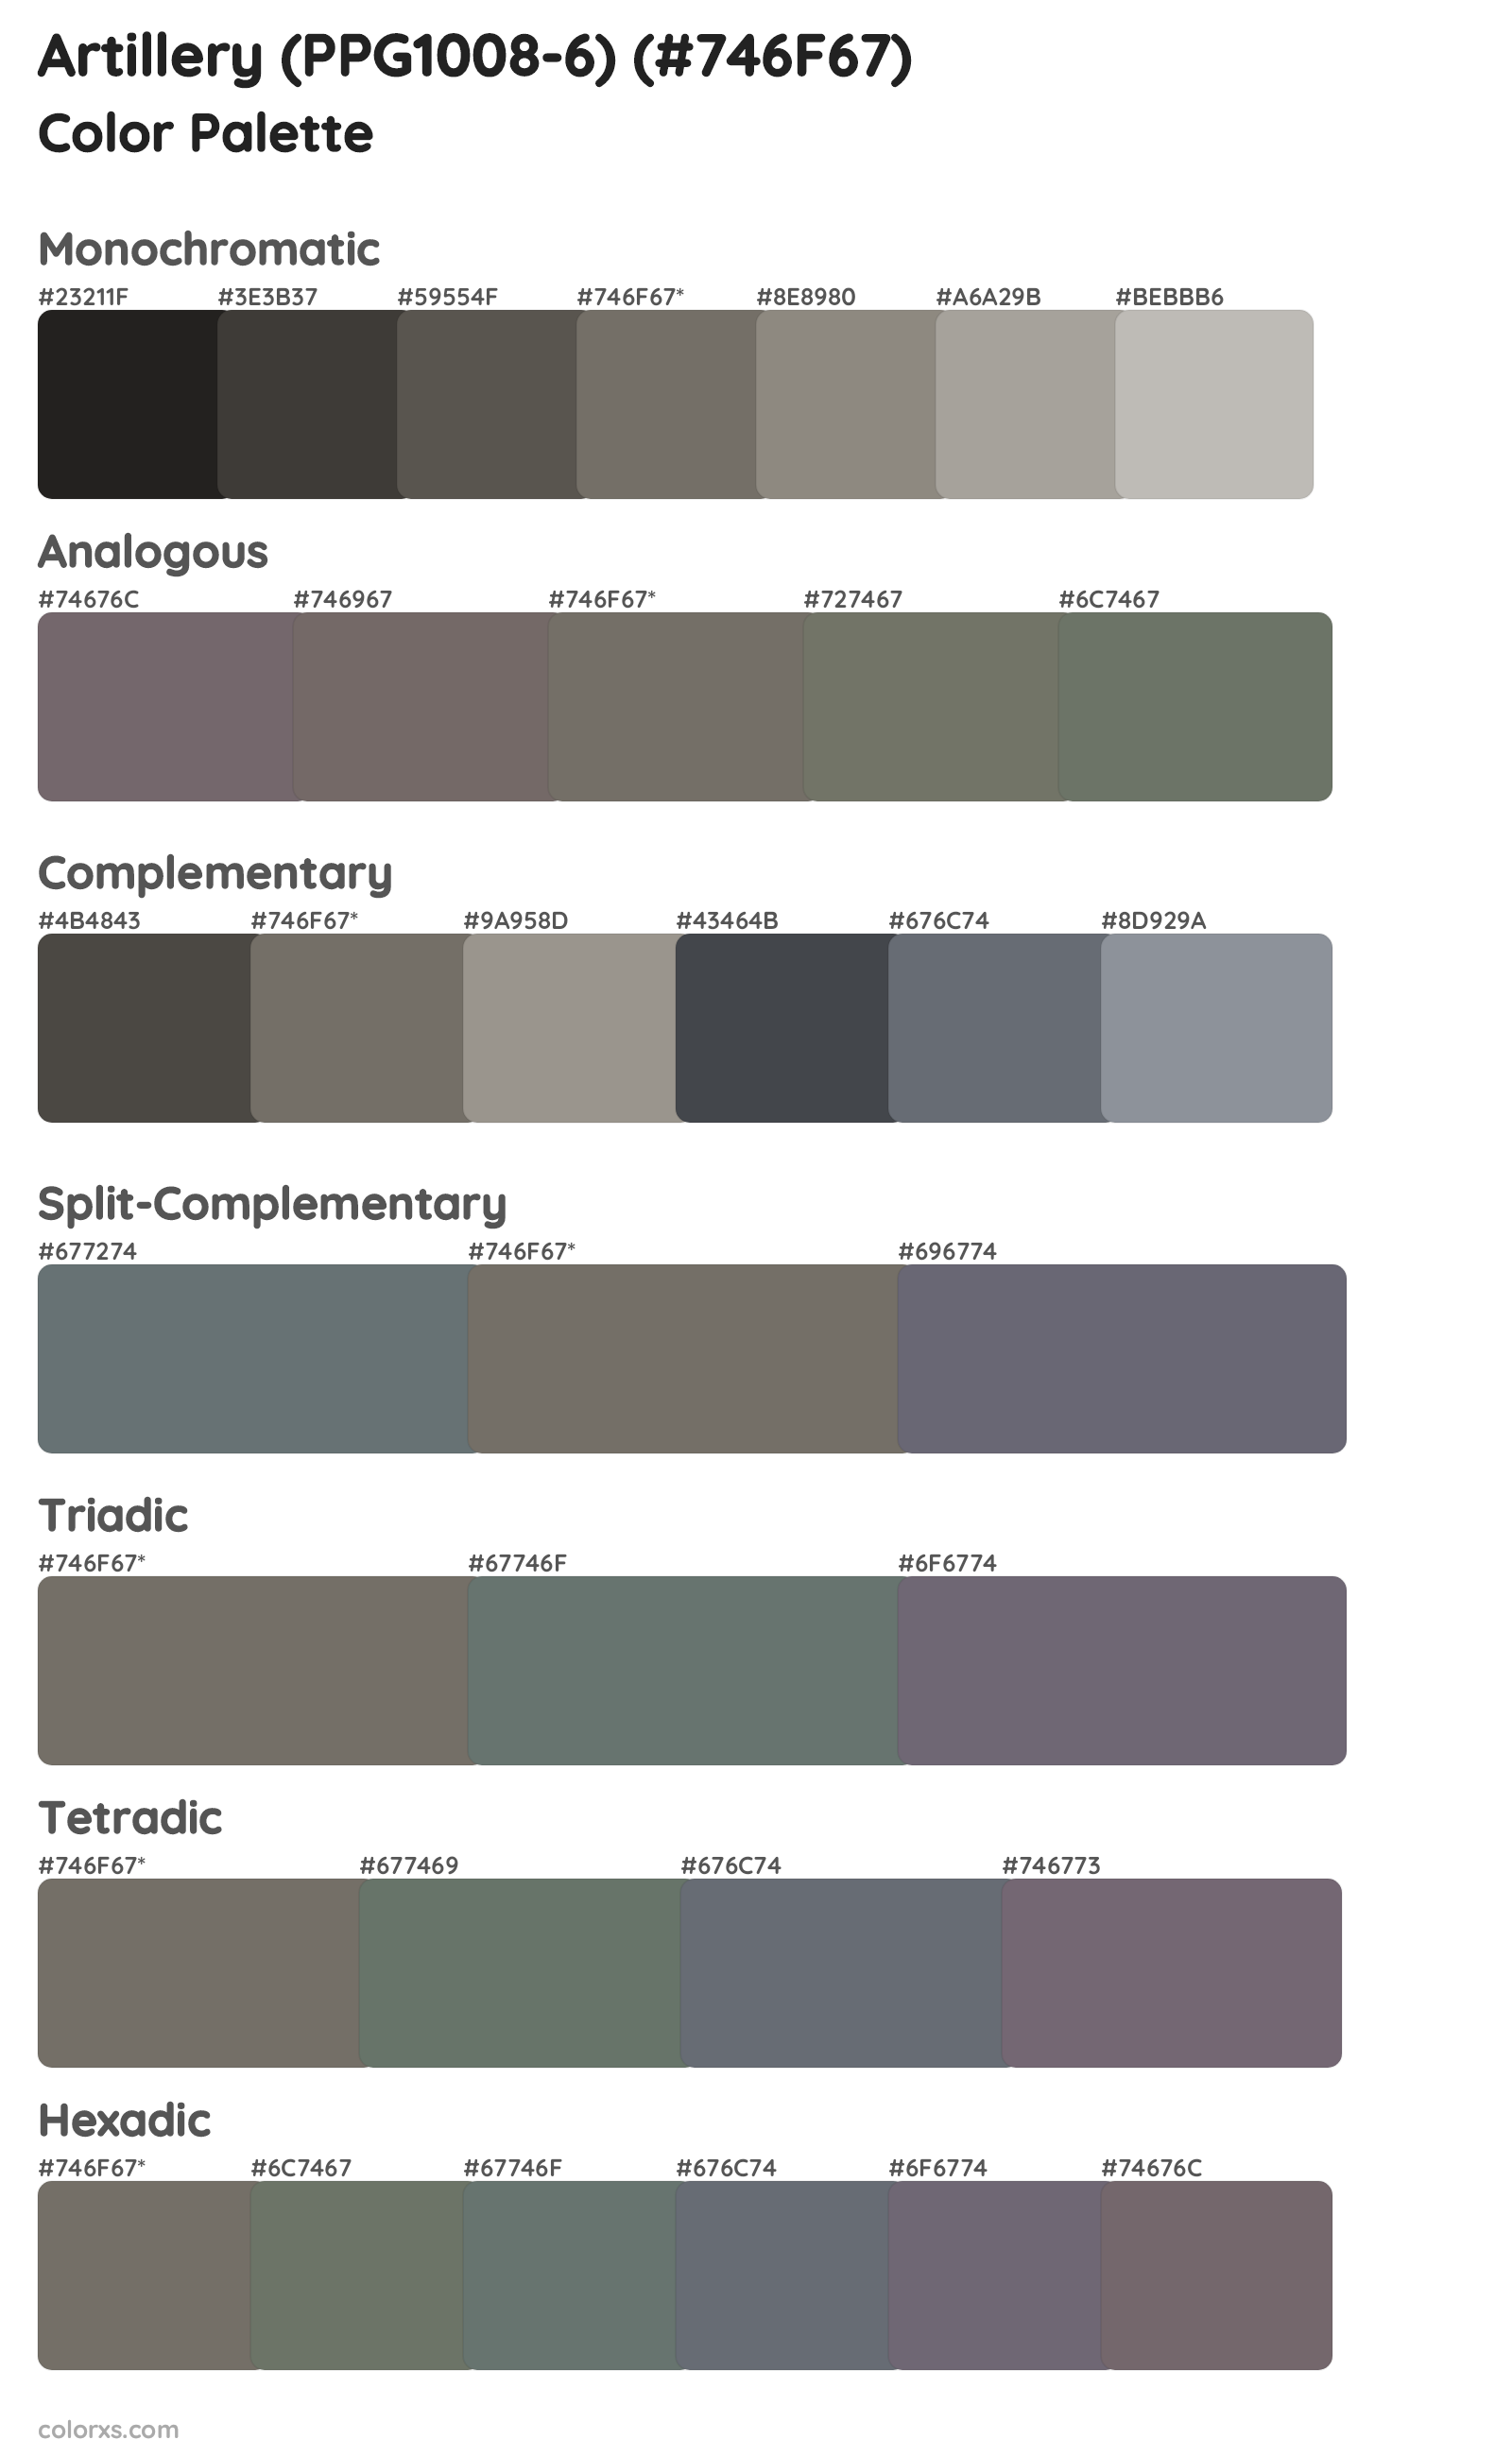 Artillery (PPG1008-6) Color Scheme Palettes